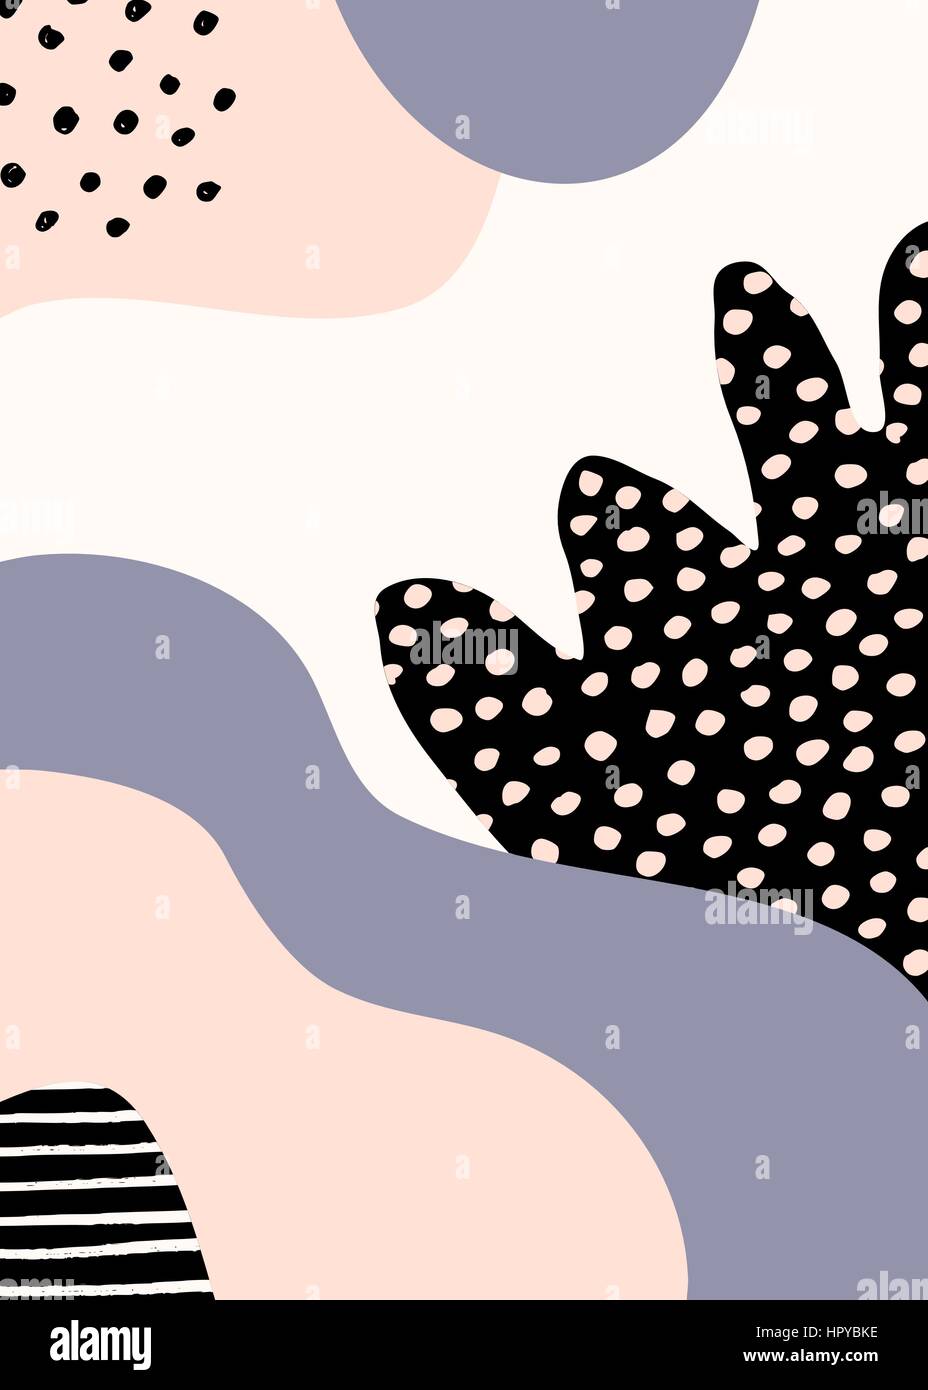 Collage stile design con abstract e forme organiche in rosa pastello, lavanda viola, nero e crema. Abstract tessile, la carta di avvolgimento, parete art. Illustrazione Vettoriale